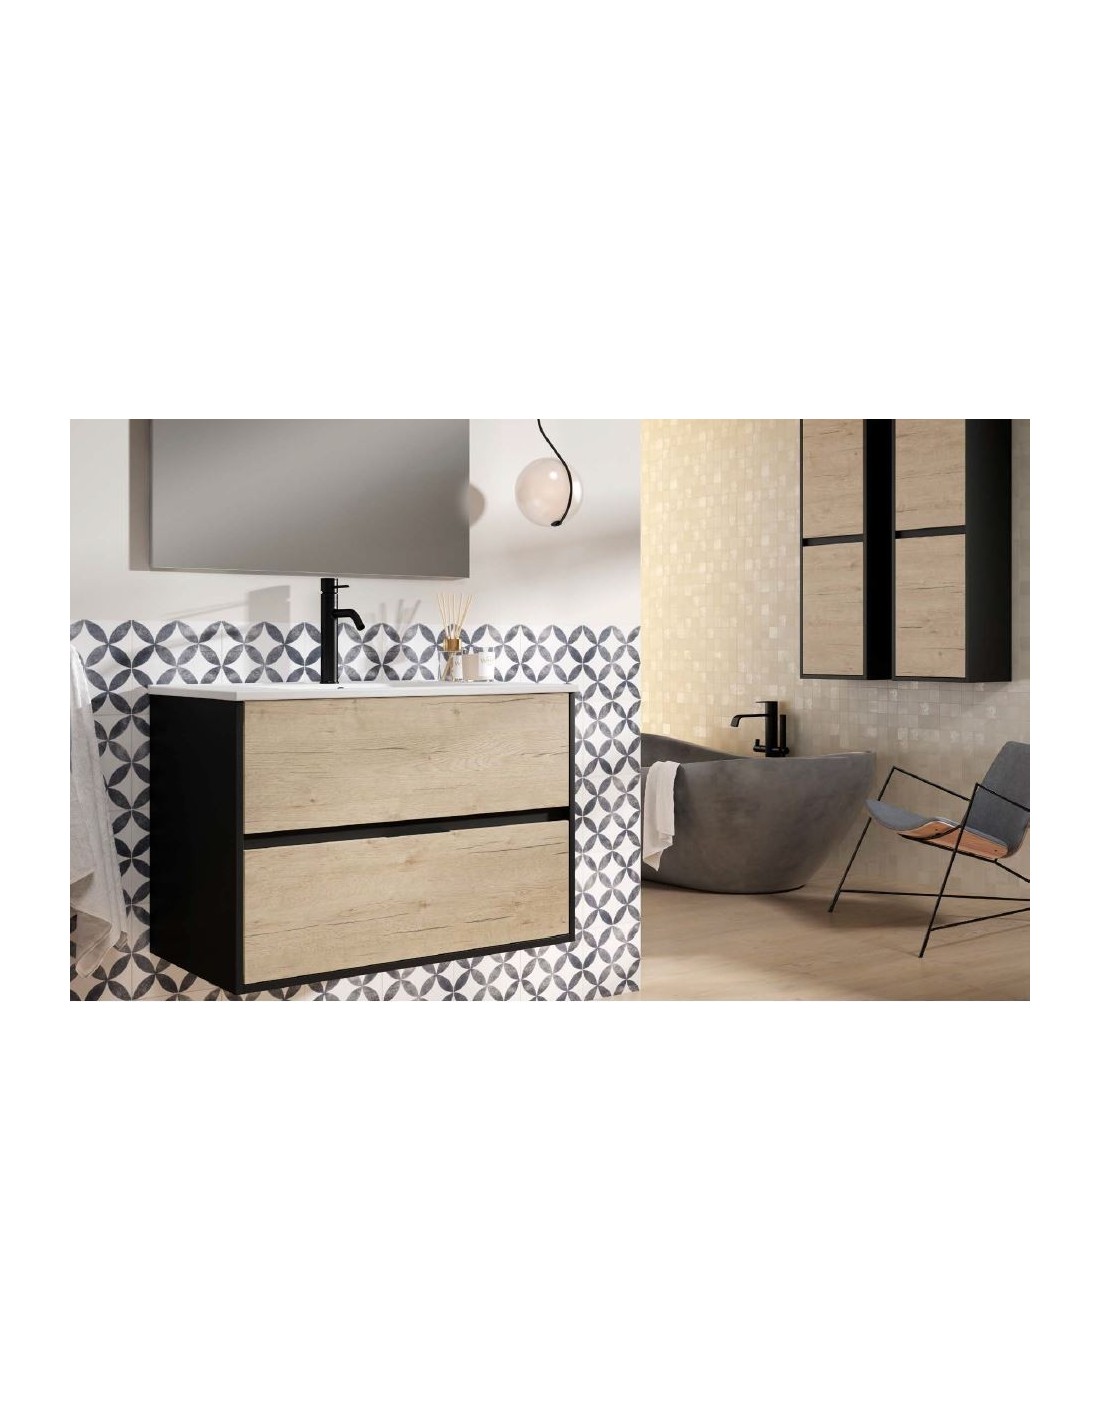 Tirador Square - Negro - para Muebles de Baño y Cocina - 128 mm